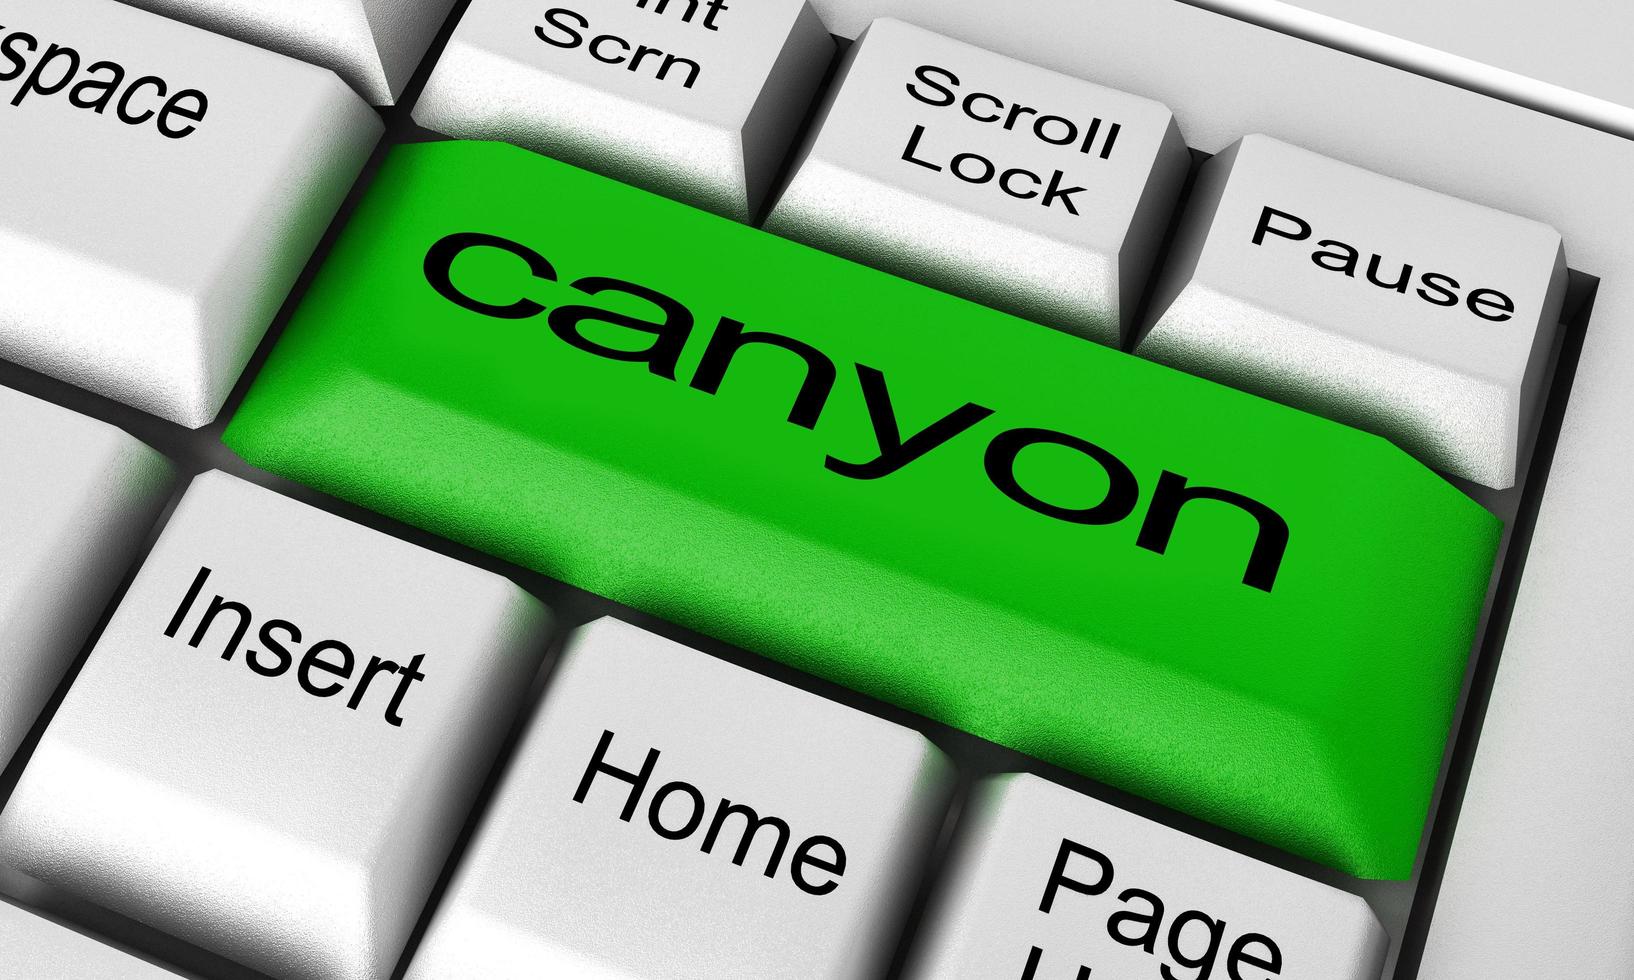 Canyon-Wort auf der Tastaturtaste foto